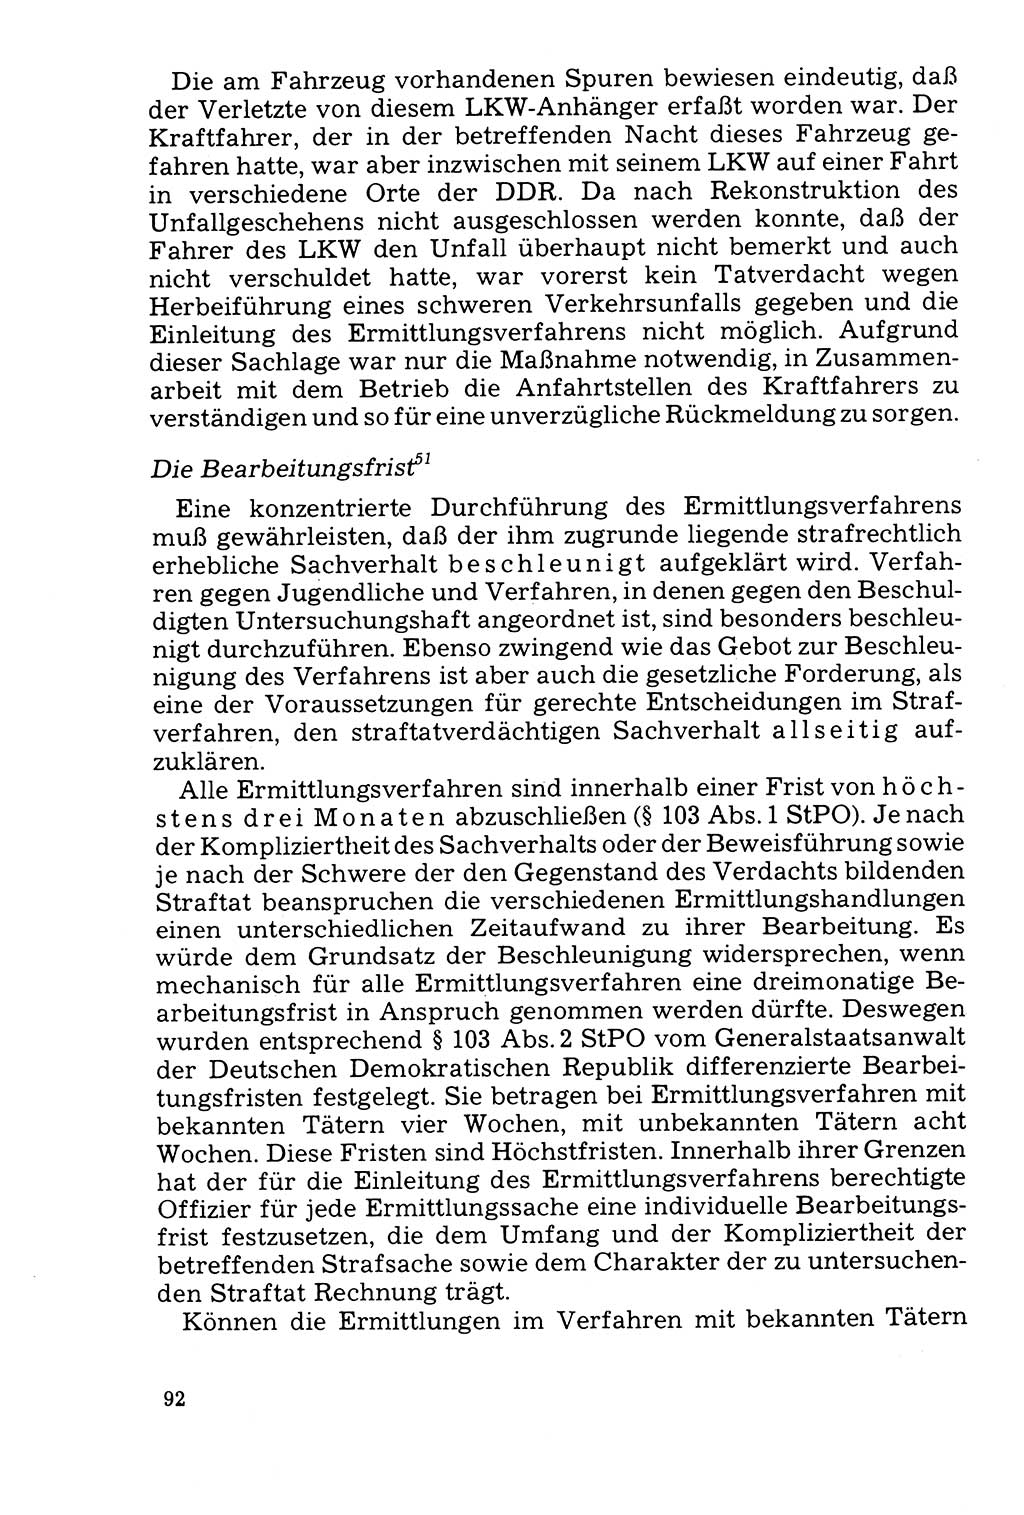 Der Abschluß des Ermittlungsverfahrens [Deutsche Demokratische Republik (DDR)] 1978, Seite 92 (Abschl. EV DDR 1978, S. 92)